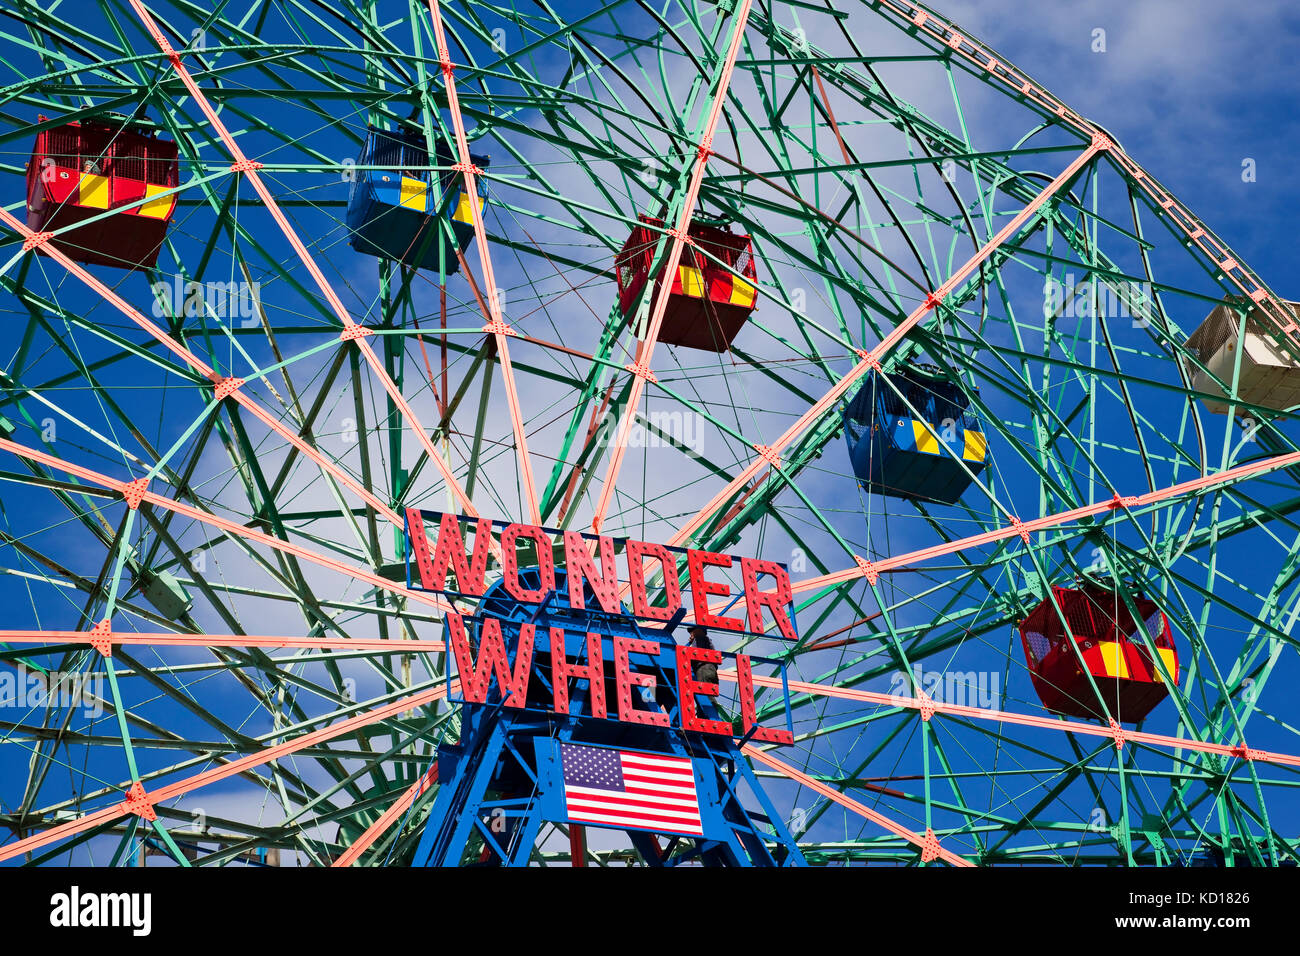 Construido en 1920 por el excéntrico Ferris Wheel Company, la maravilla rueda está situado en deno's Amusement Park en Coney Island, Brooklyn, New York City, New York, U.S.A. Foto de stock